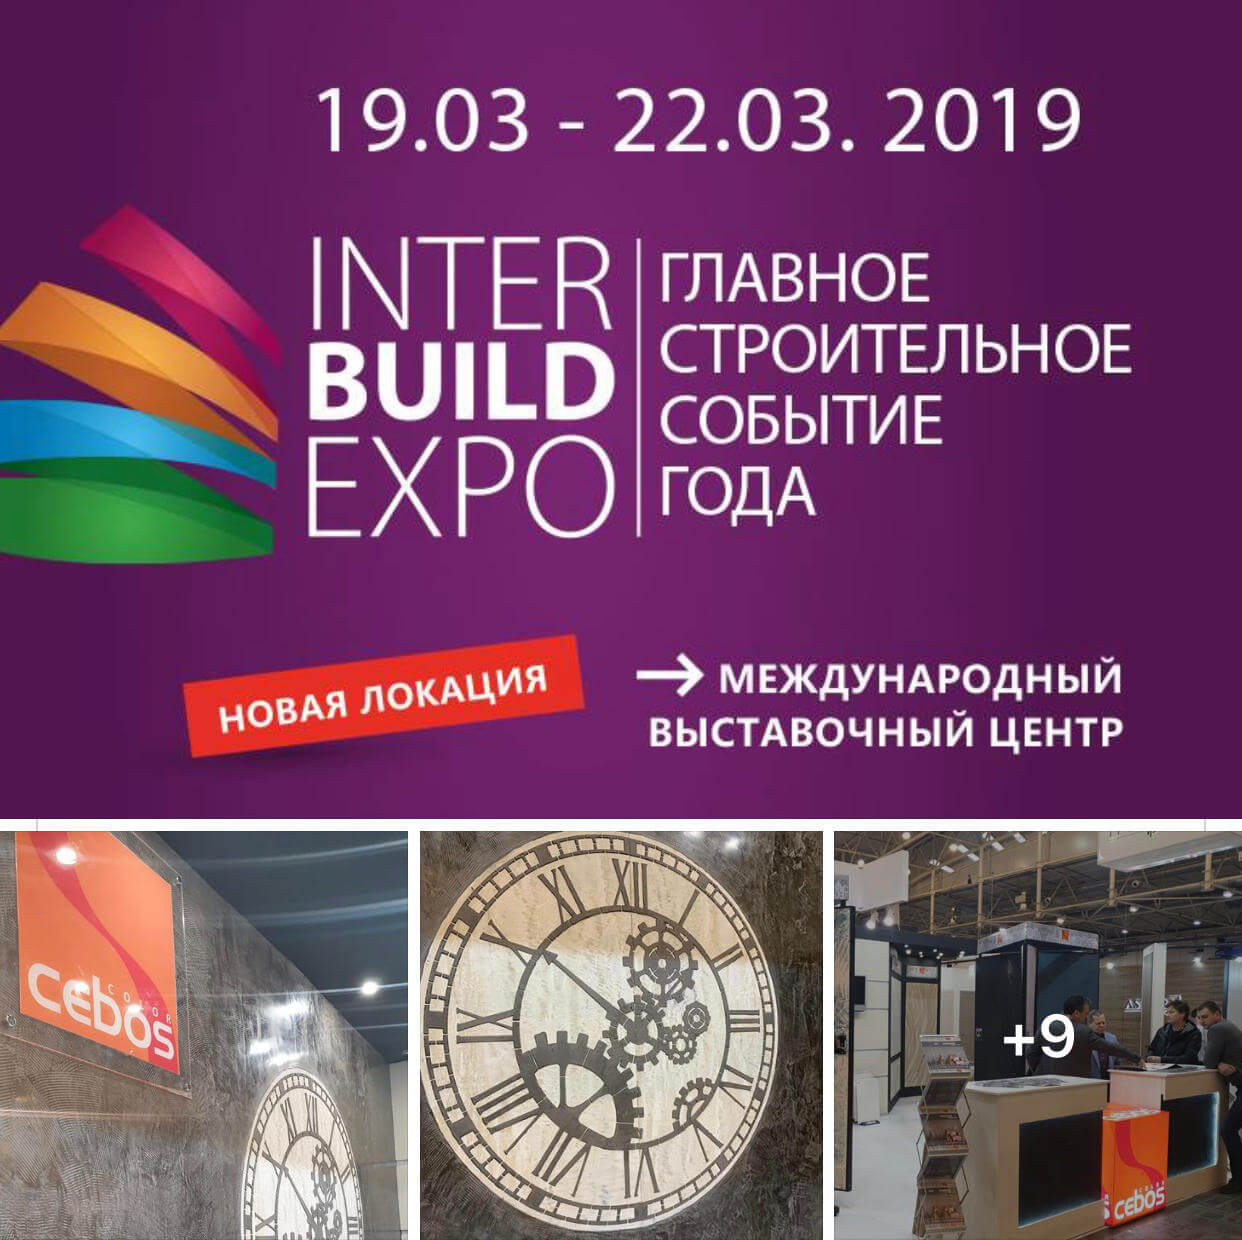 Выставка InterBuildExpo 2019 декоративных штукатурок и красок. Киев. 19-23 марта 2019 ТМ Cebos Color